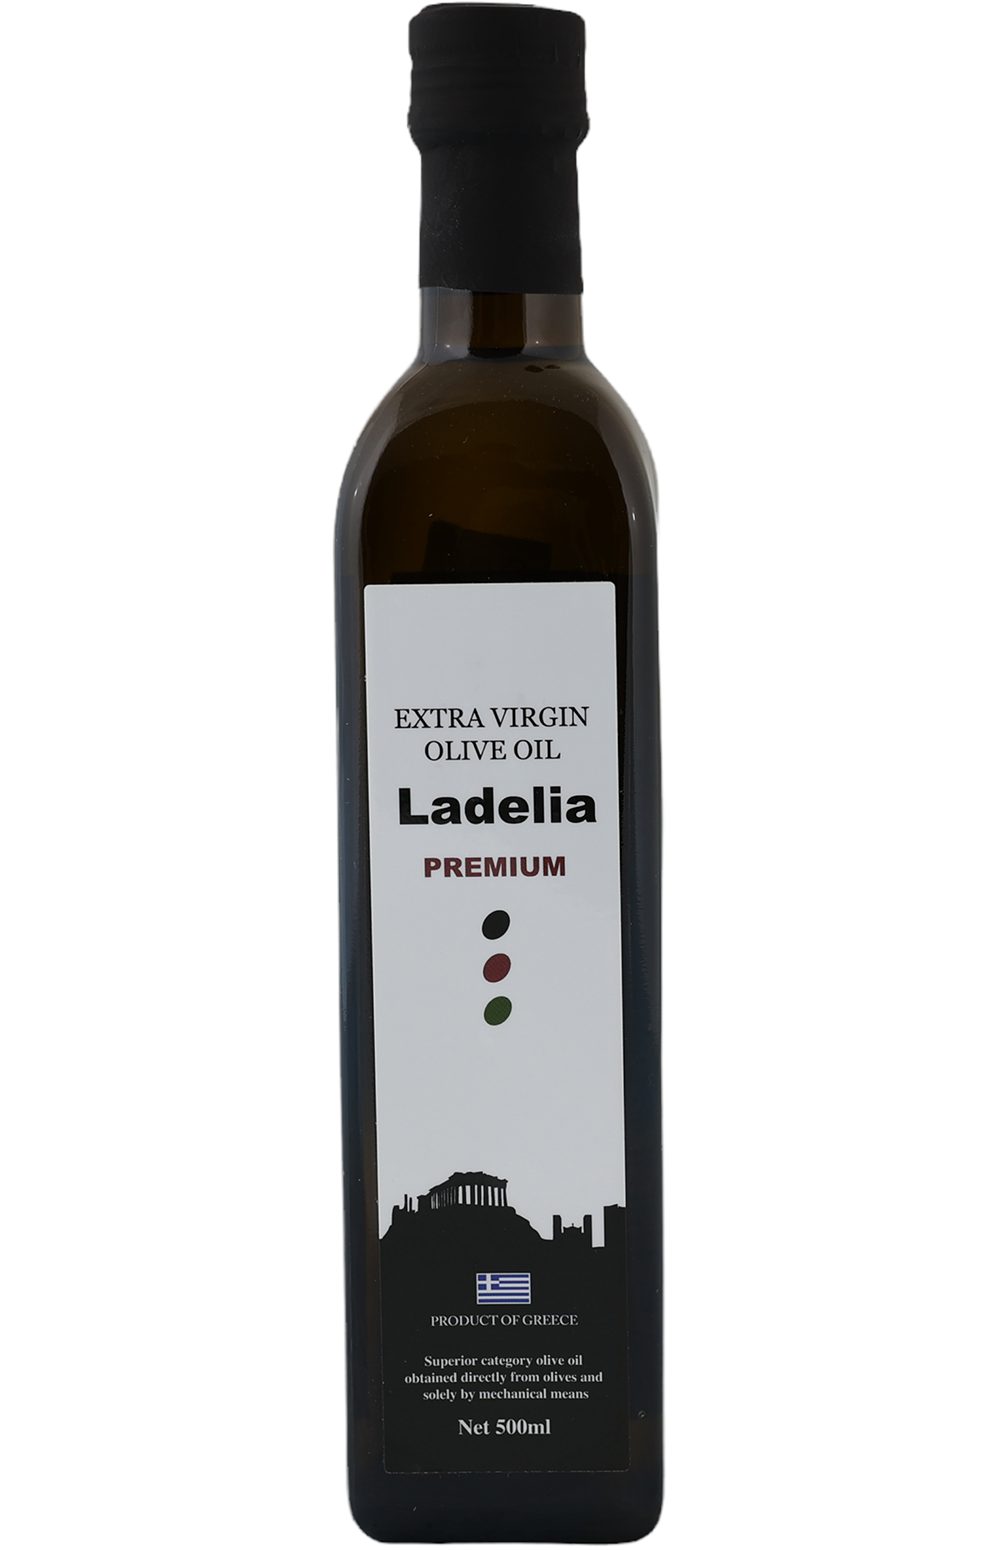 Ladelia Premium